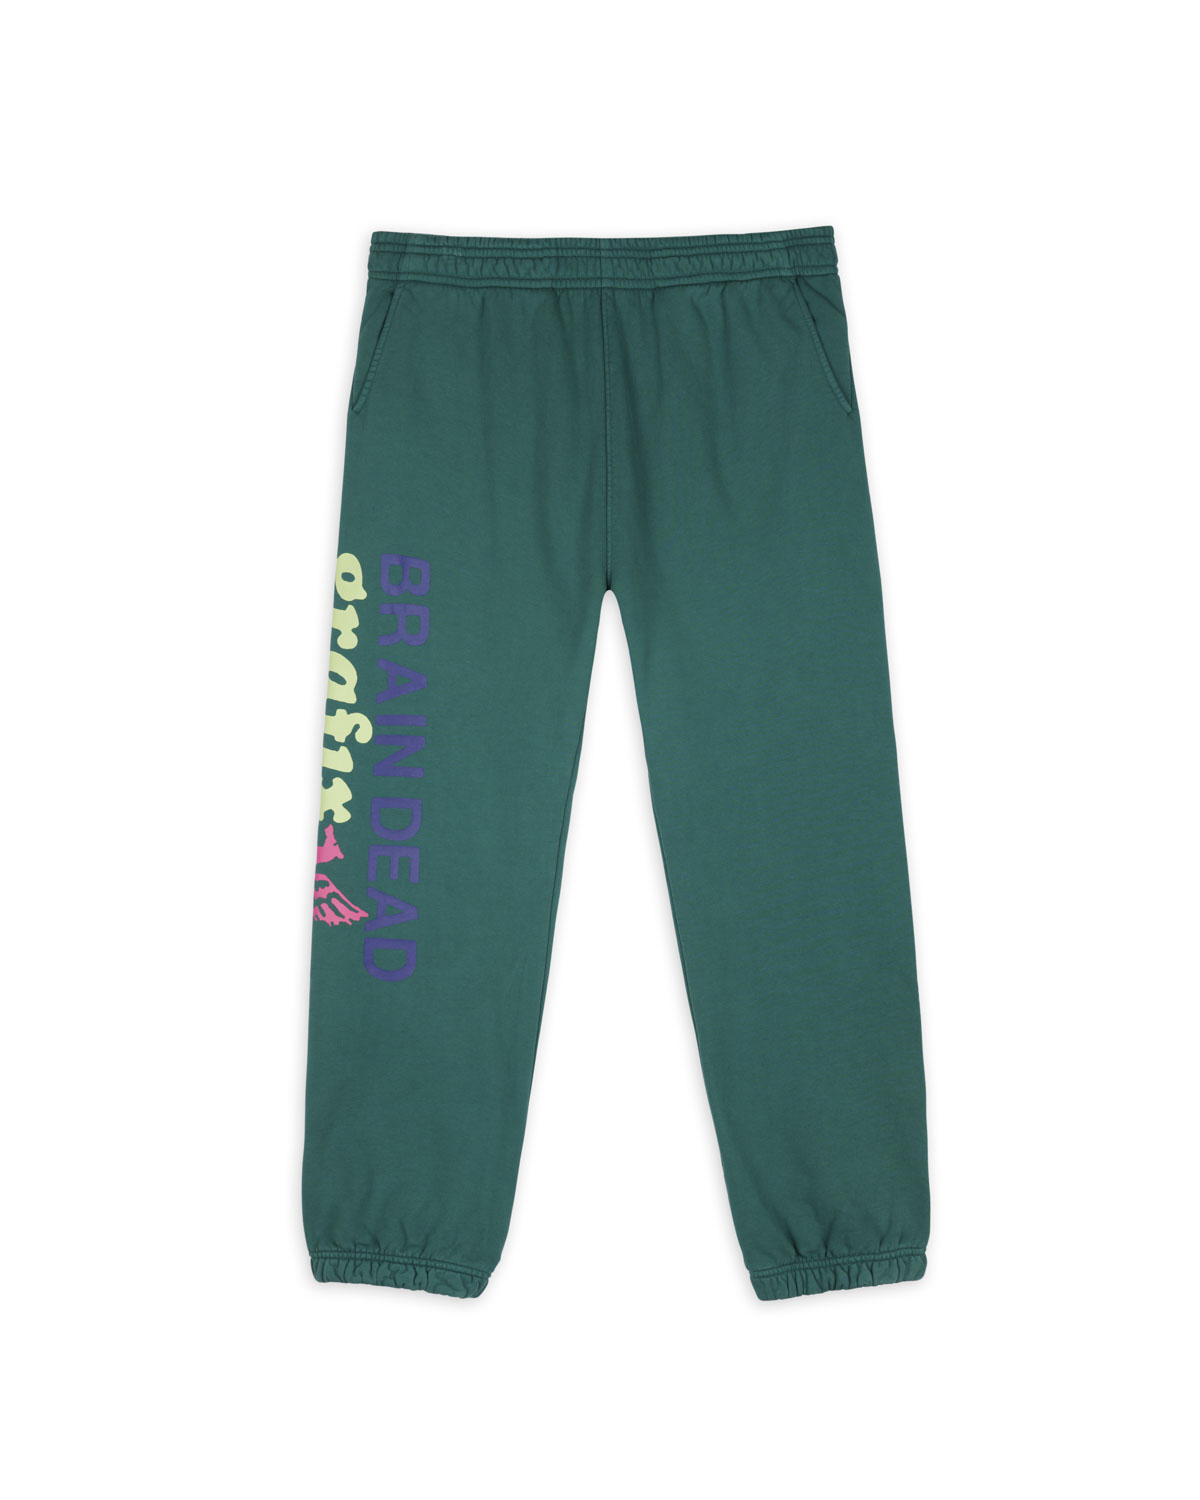 Graffix Sweatpants, Emerald